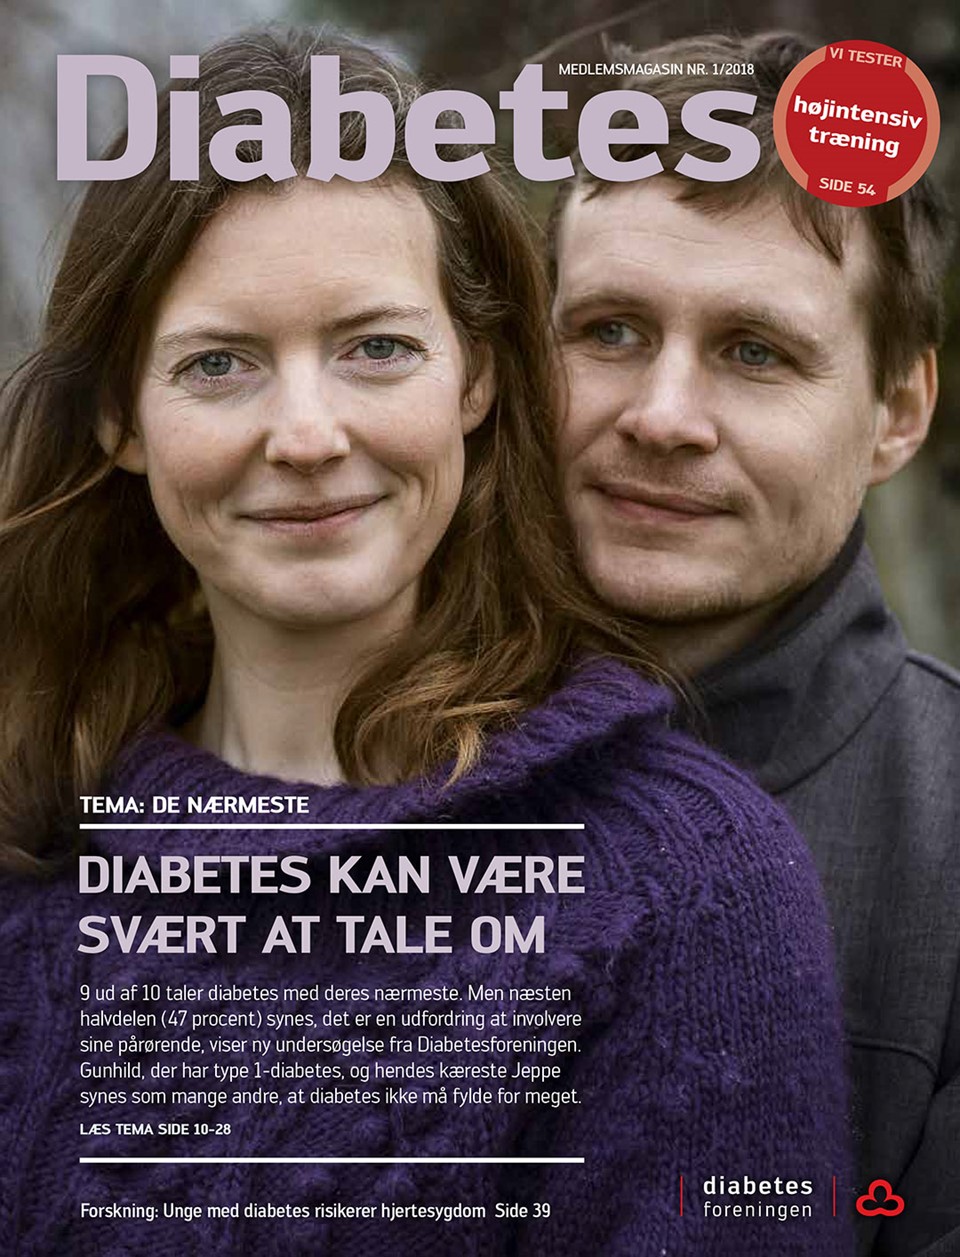  Forside af magasinet Diabetes februar 2018